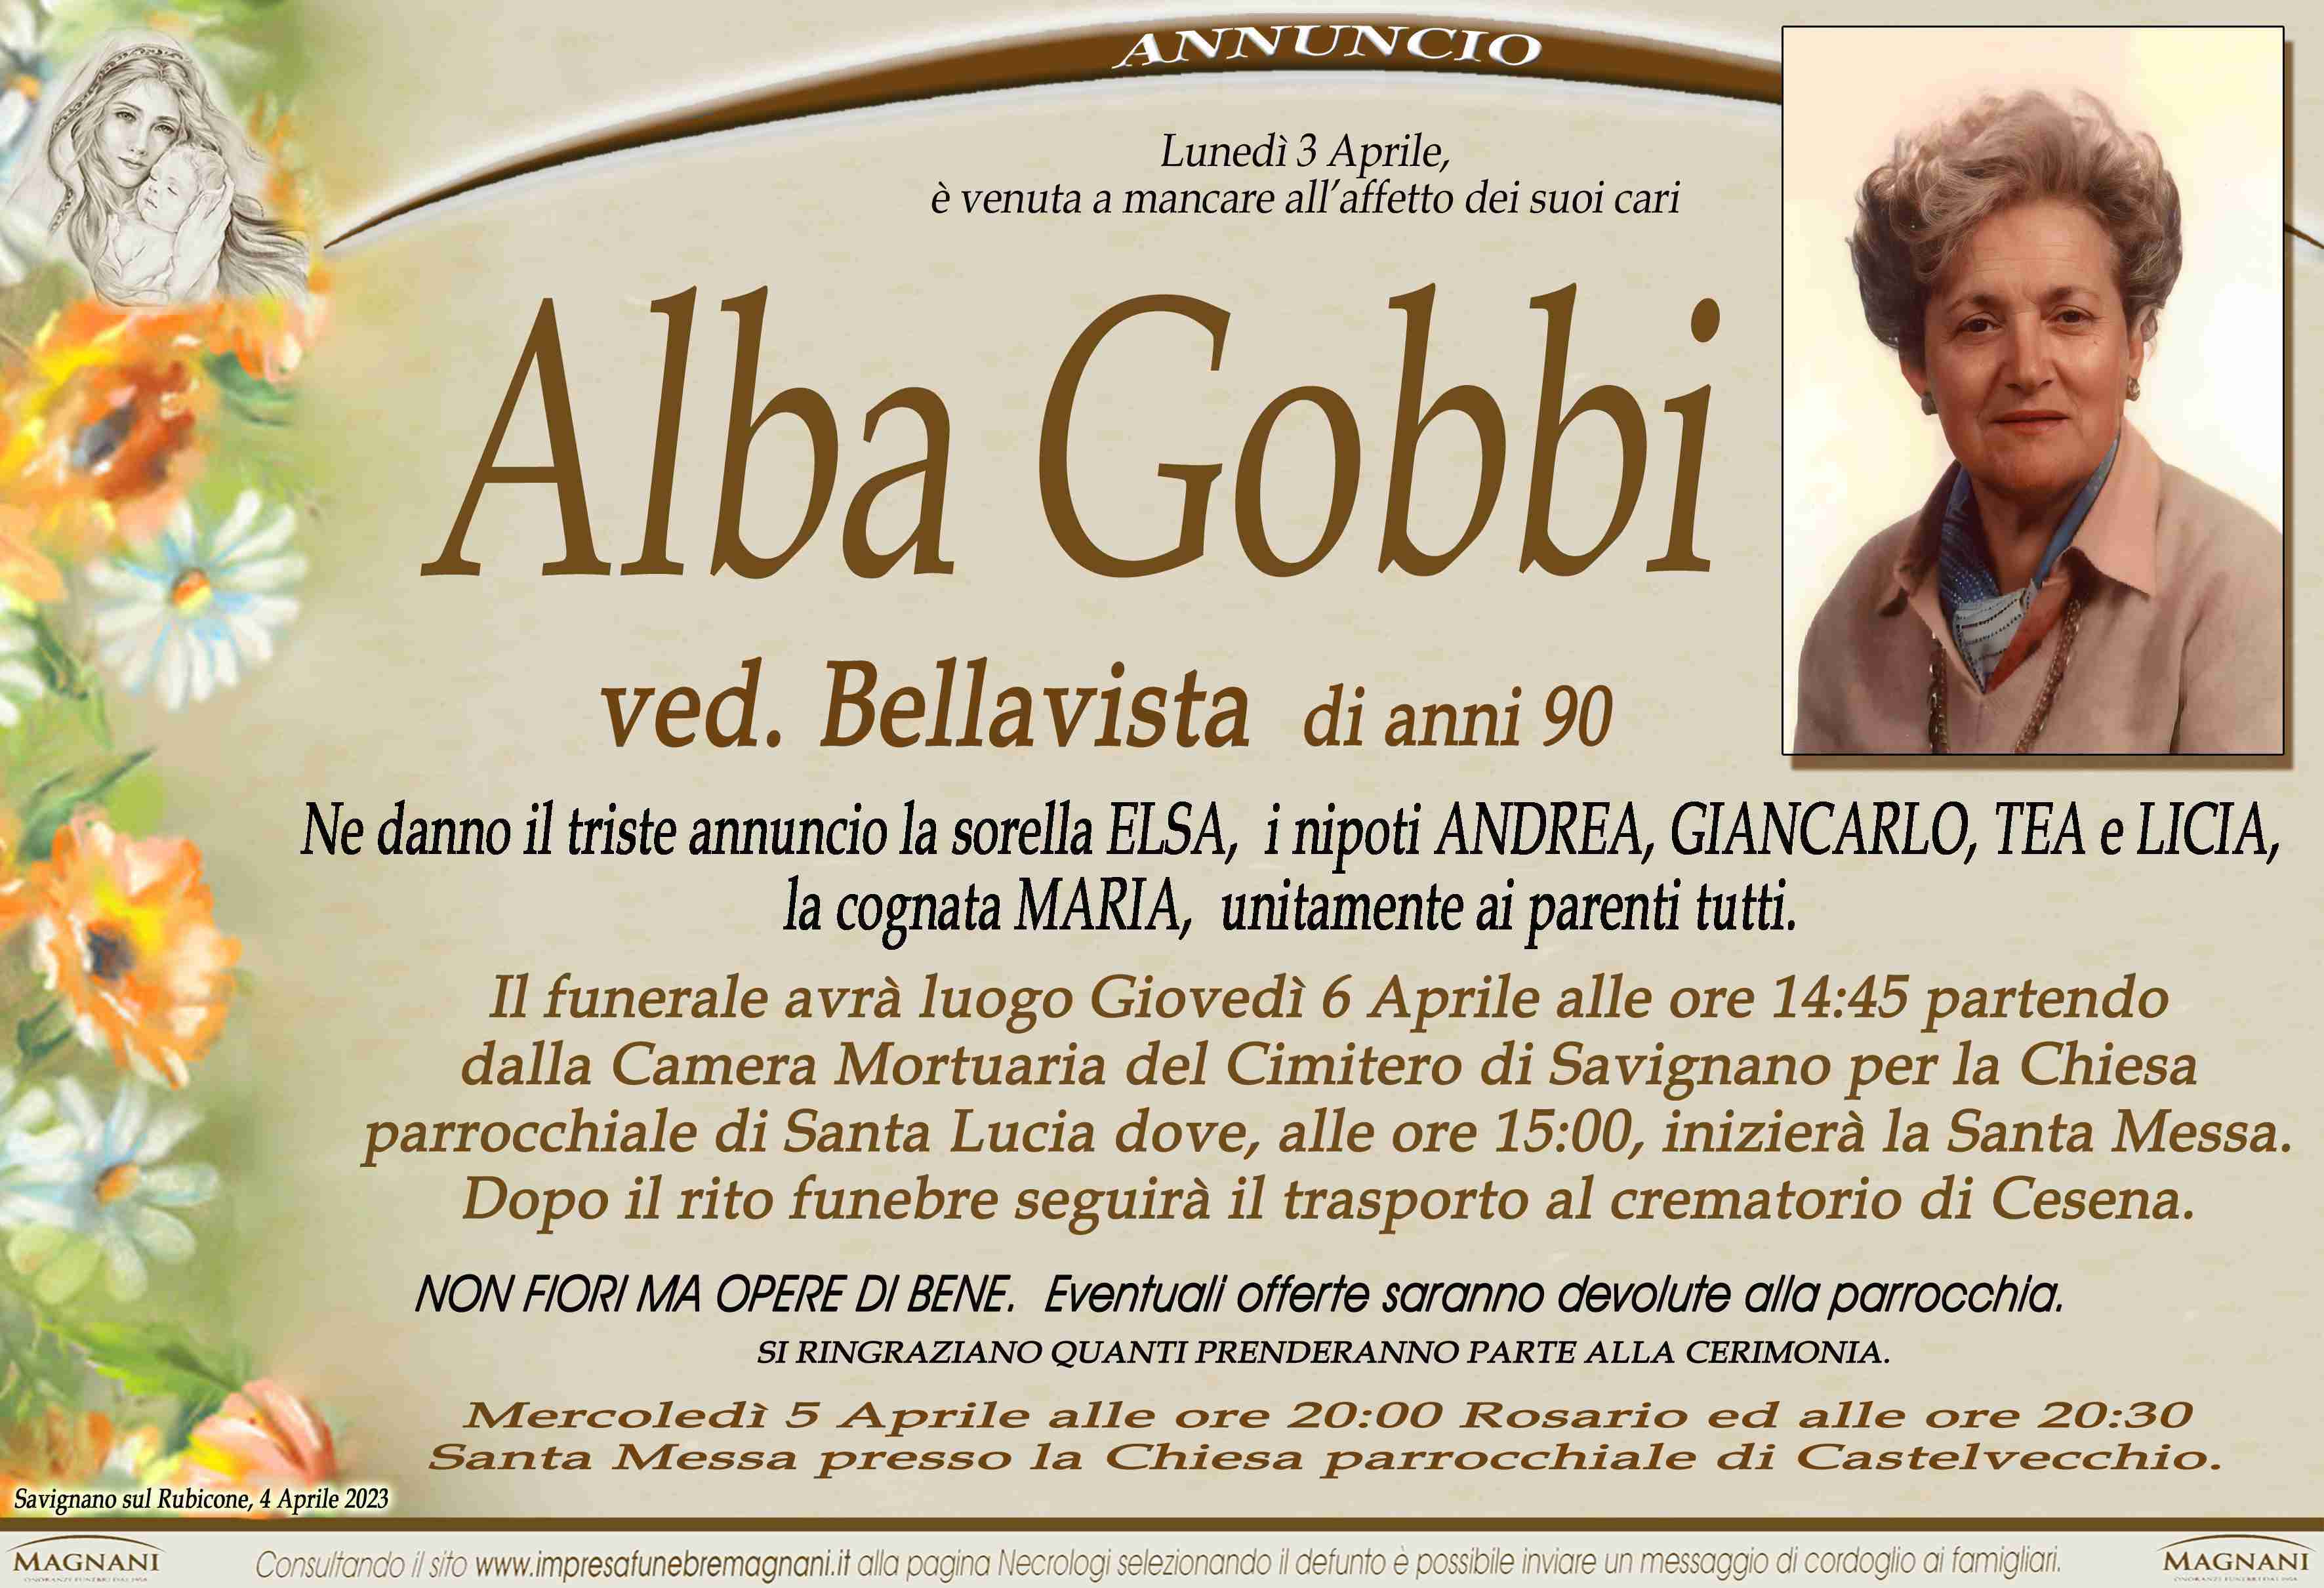 Alba Gobbi